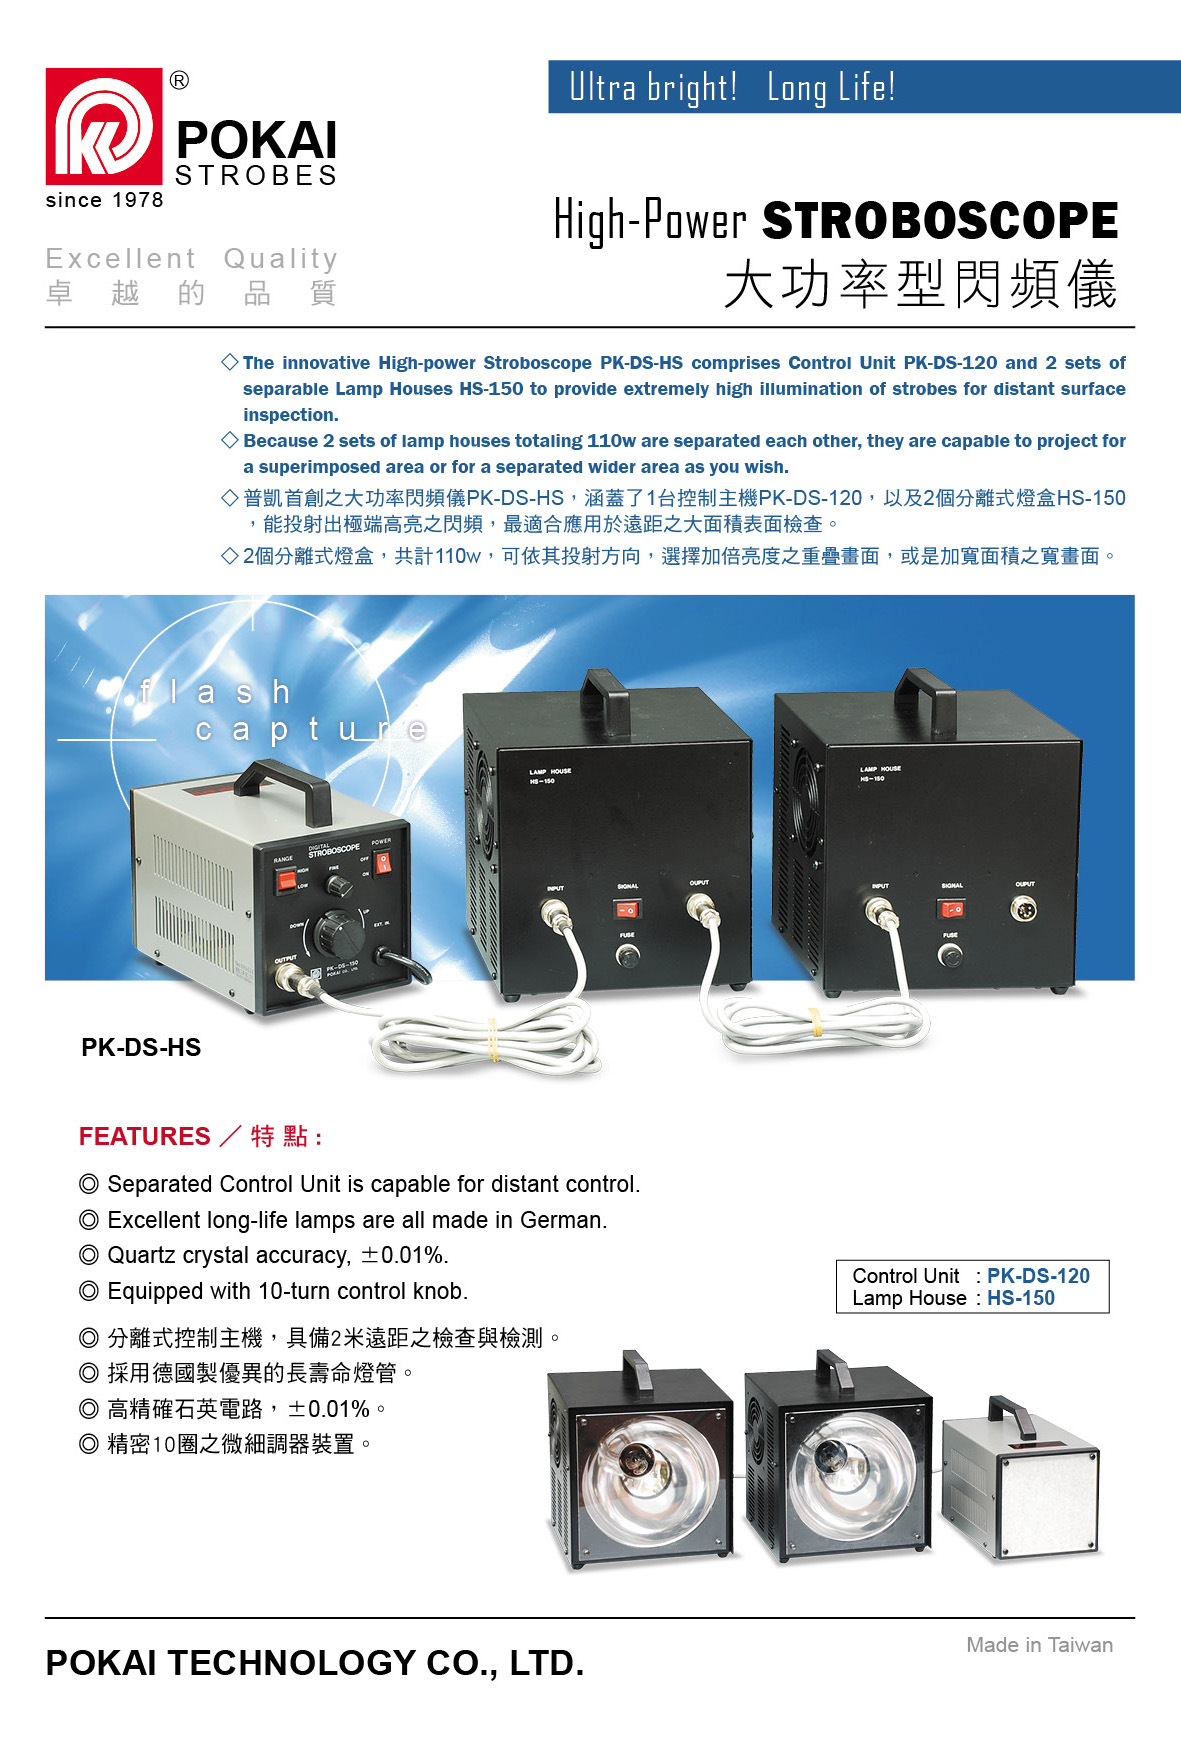 High-Power STROBOSCOPE PK-DS-120 / HS-150